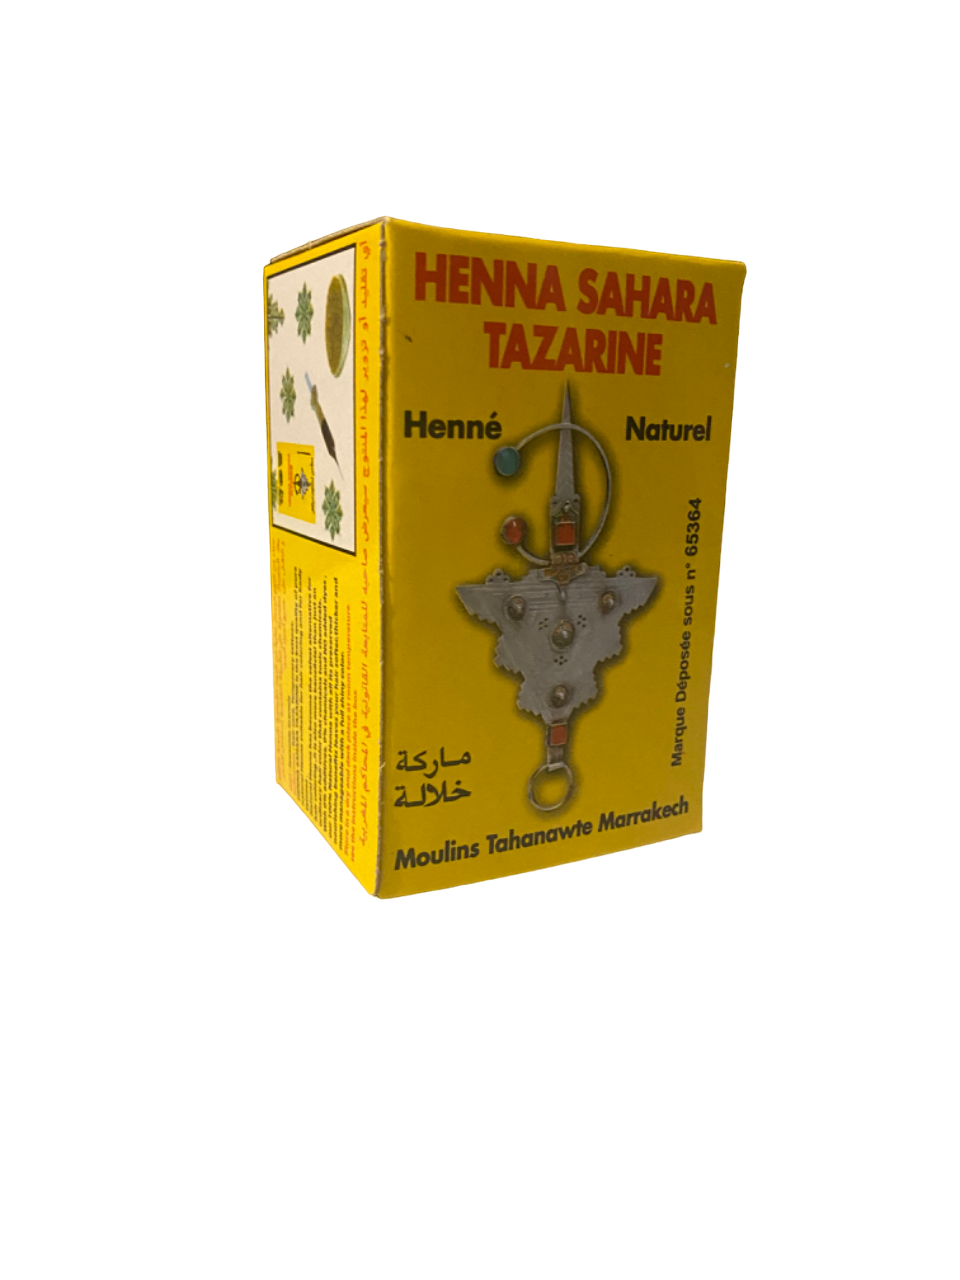 Henna Sahara Tazarine - natürliches Henna - حناء صحراء تزرين -